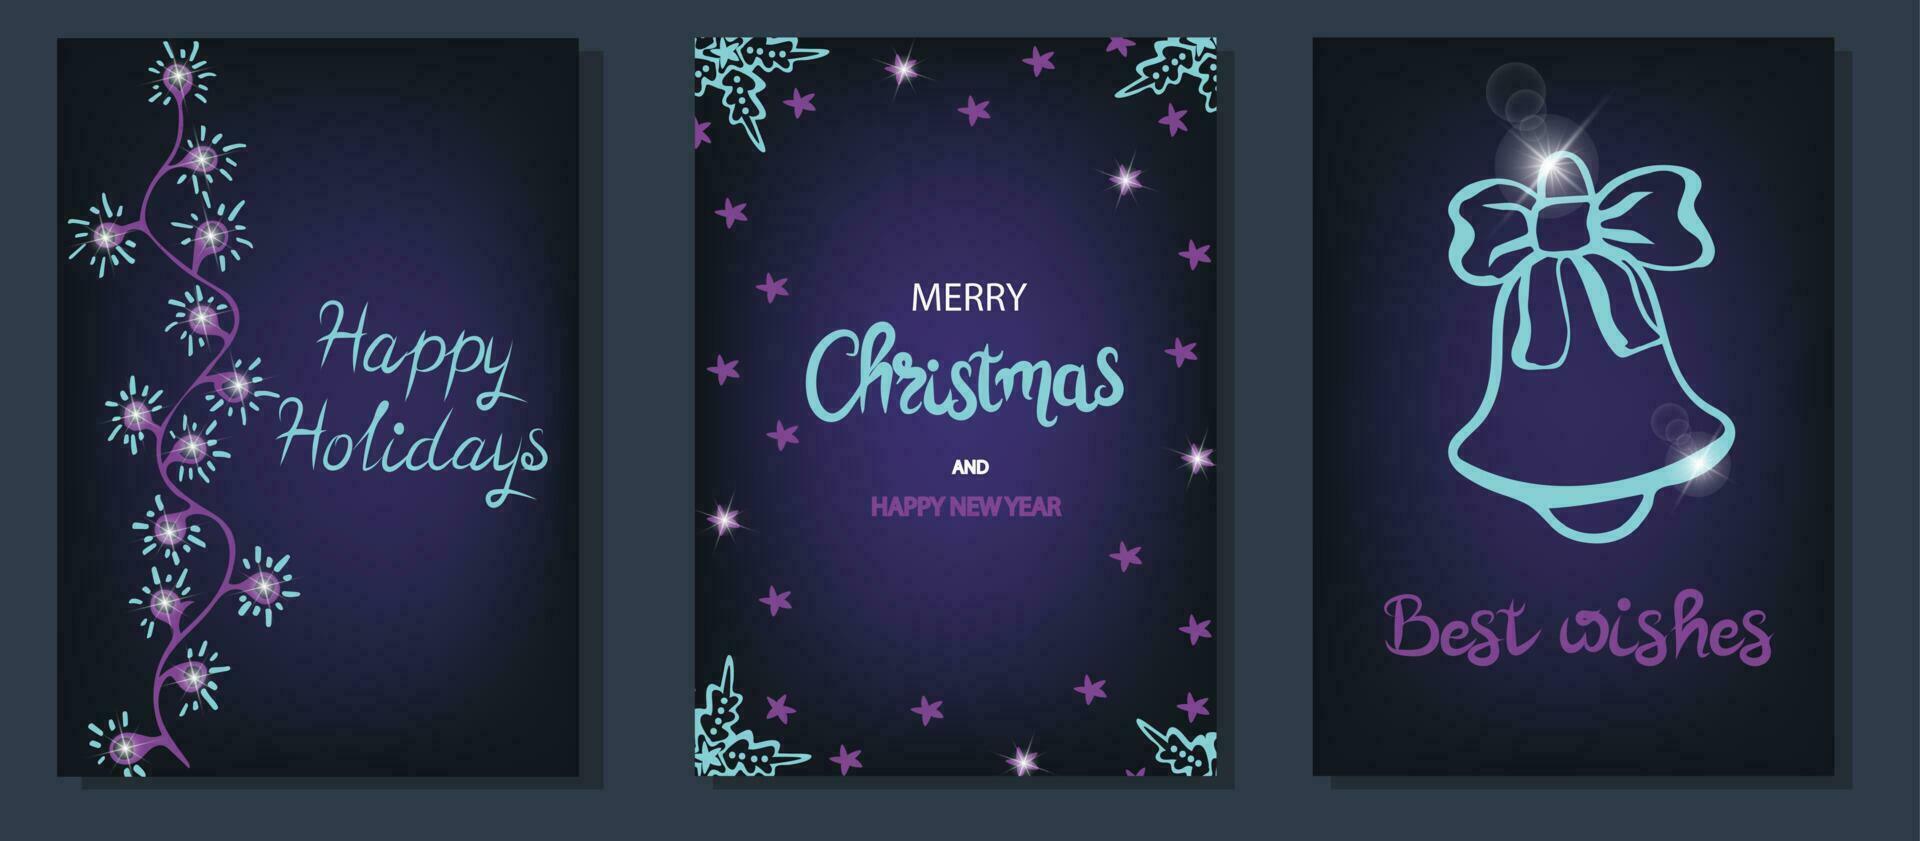 impostato di Natale saluto carta con mano lettering vettore